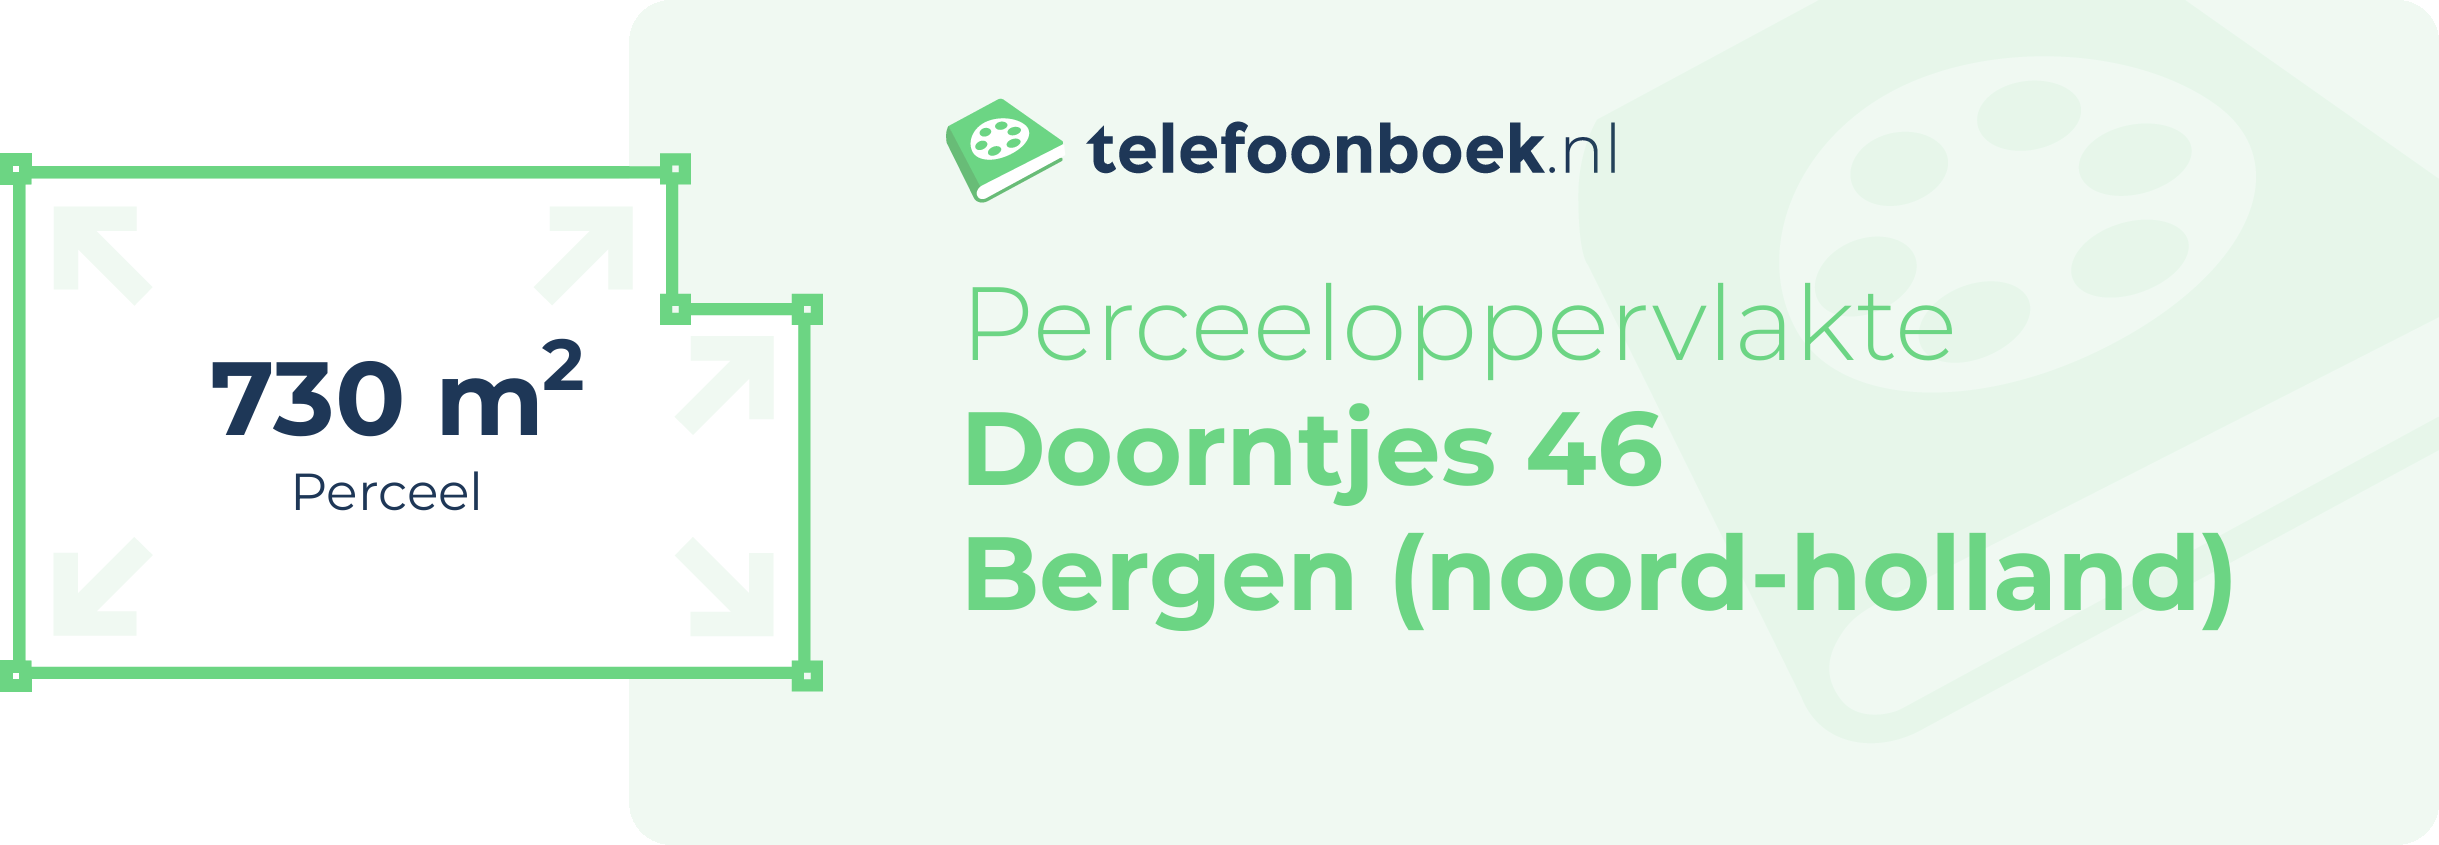 Perceeloppervlakte Doorntjes 46 Bergen (Noord-Holland)